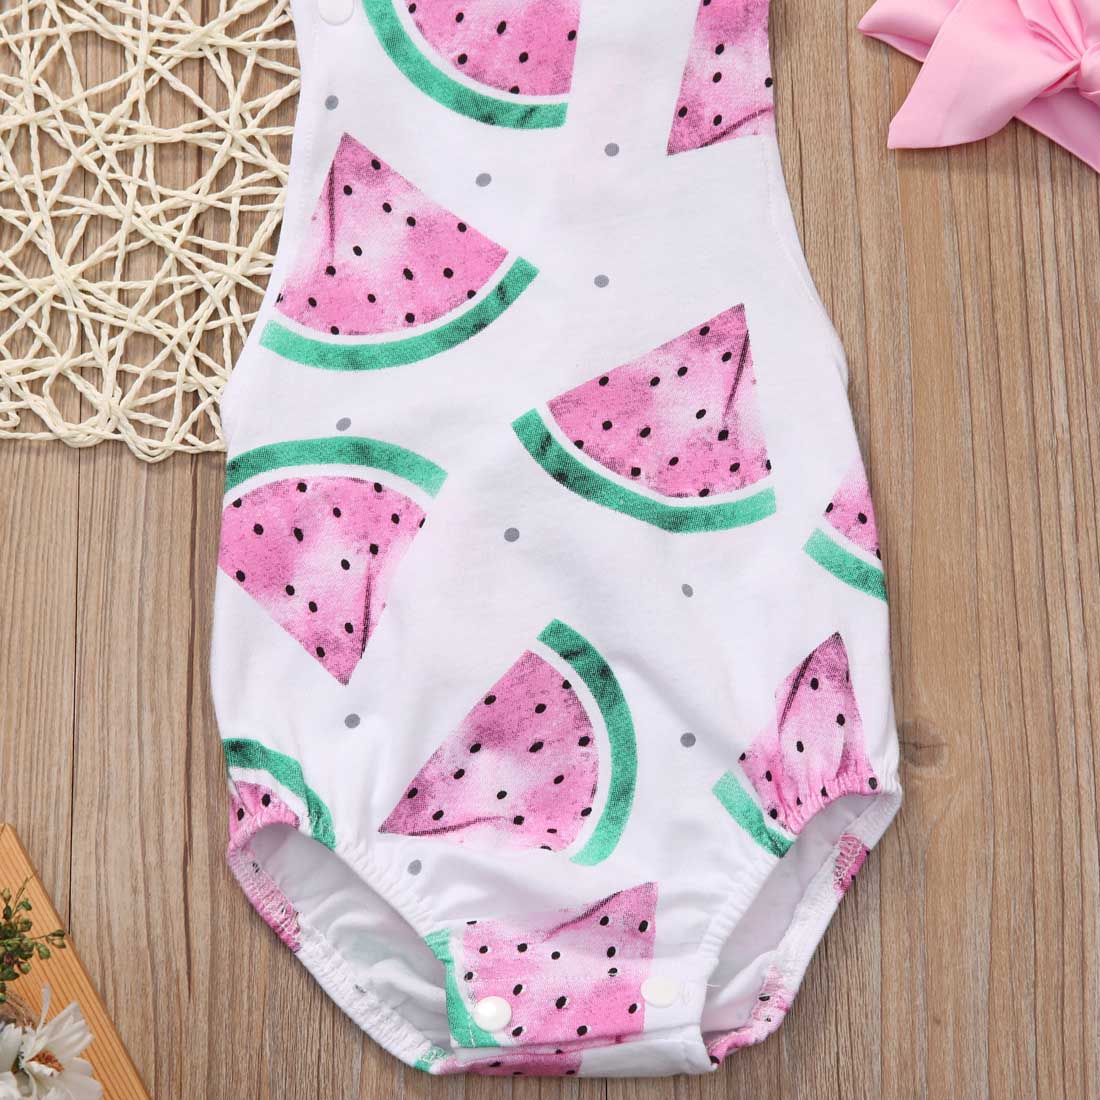 Infant Baby Girl Watermelon bodysuits Sunsuit Jumpsuit Outfit Set Clothes - ebowsos